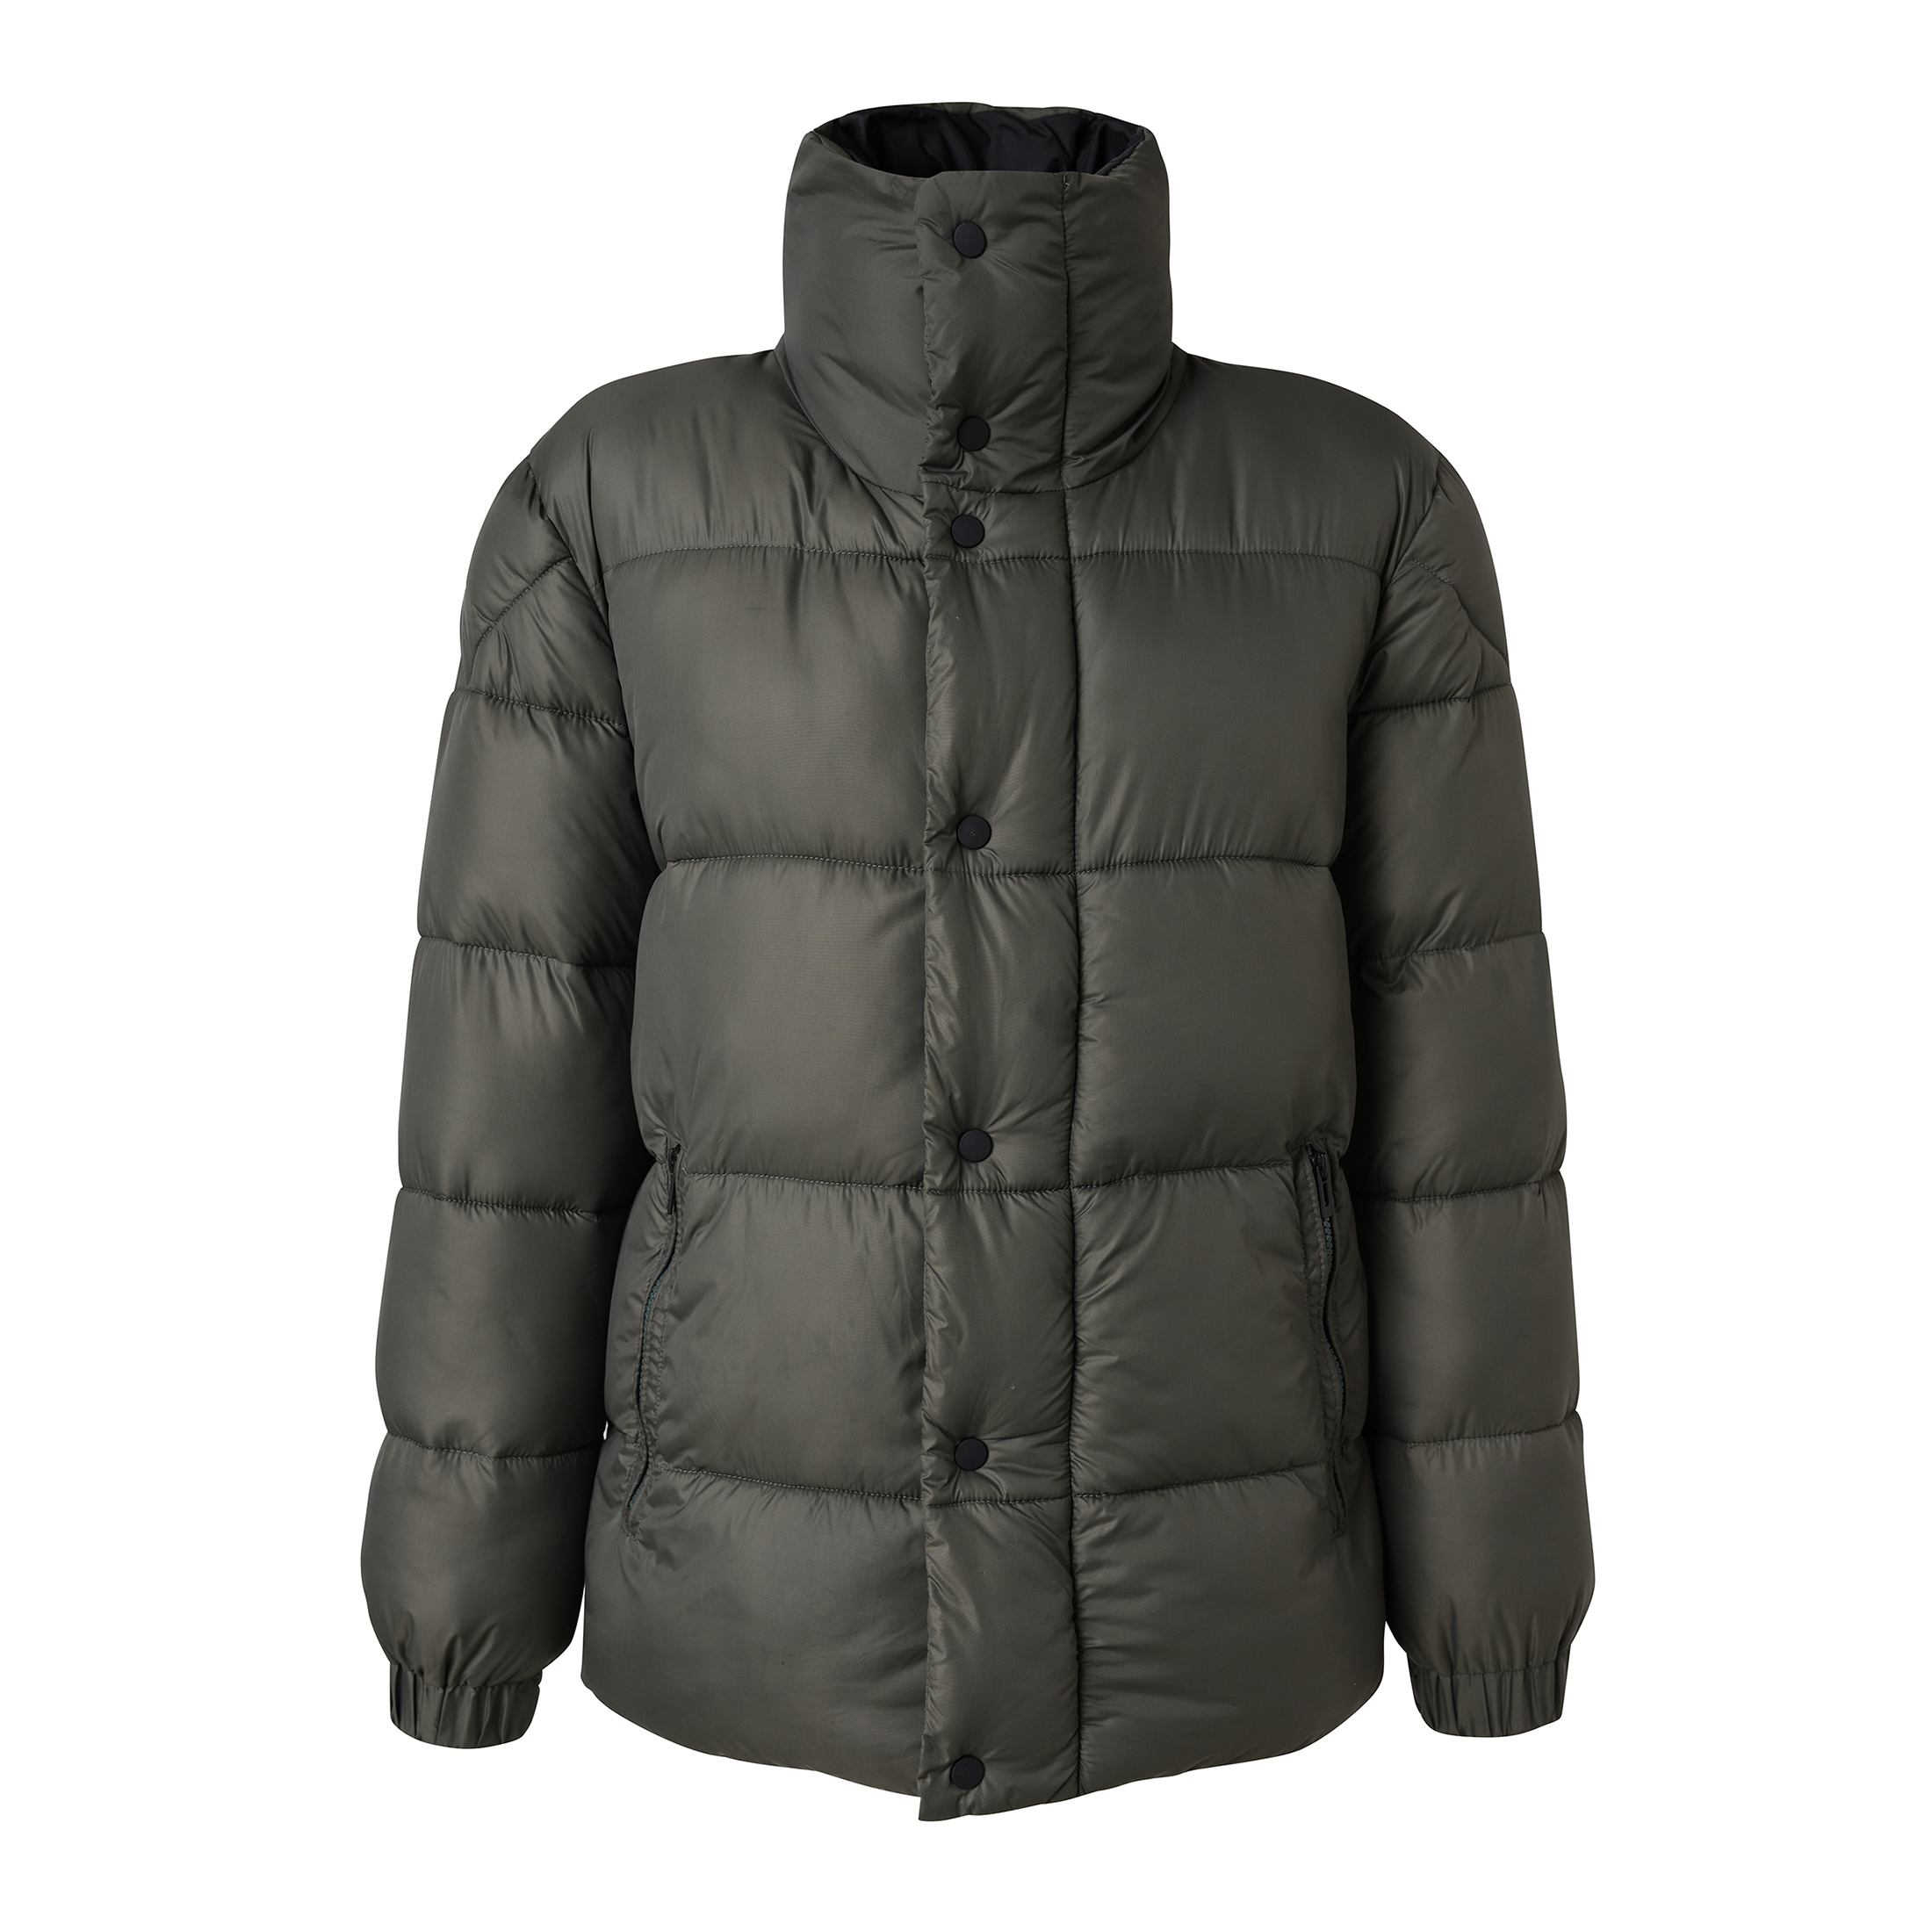 Wholesale Men\'s Winter Warm Heavy Padding Jacket Nylon Fabric Jacket Classic Style Jacket